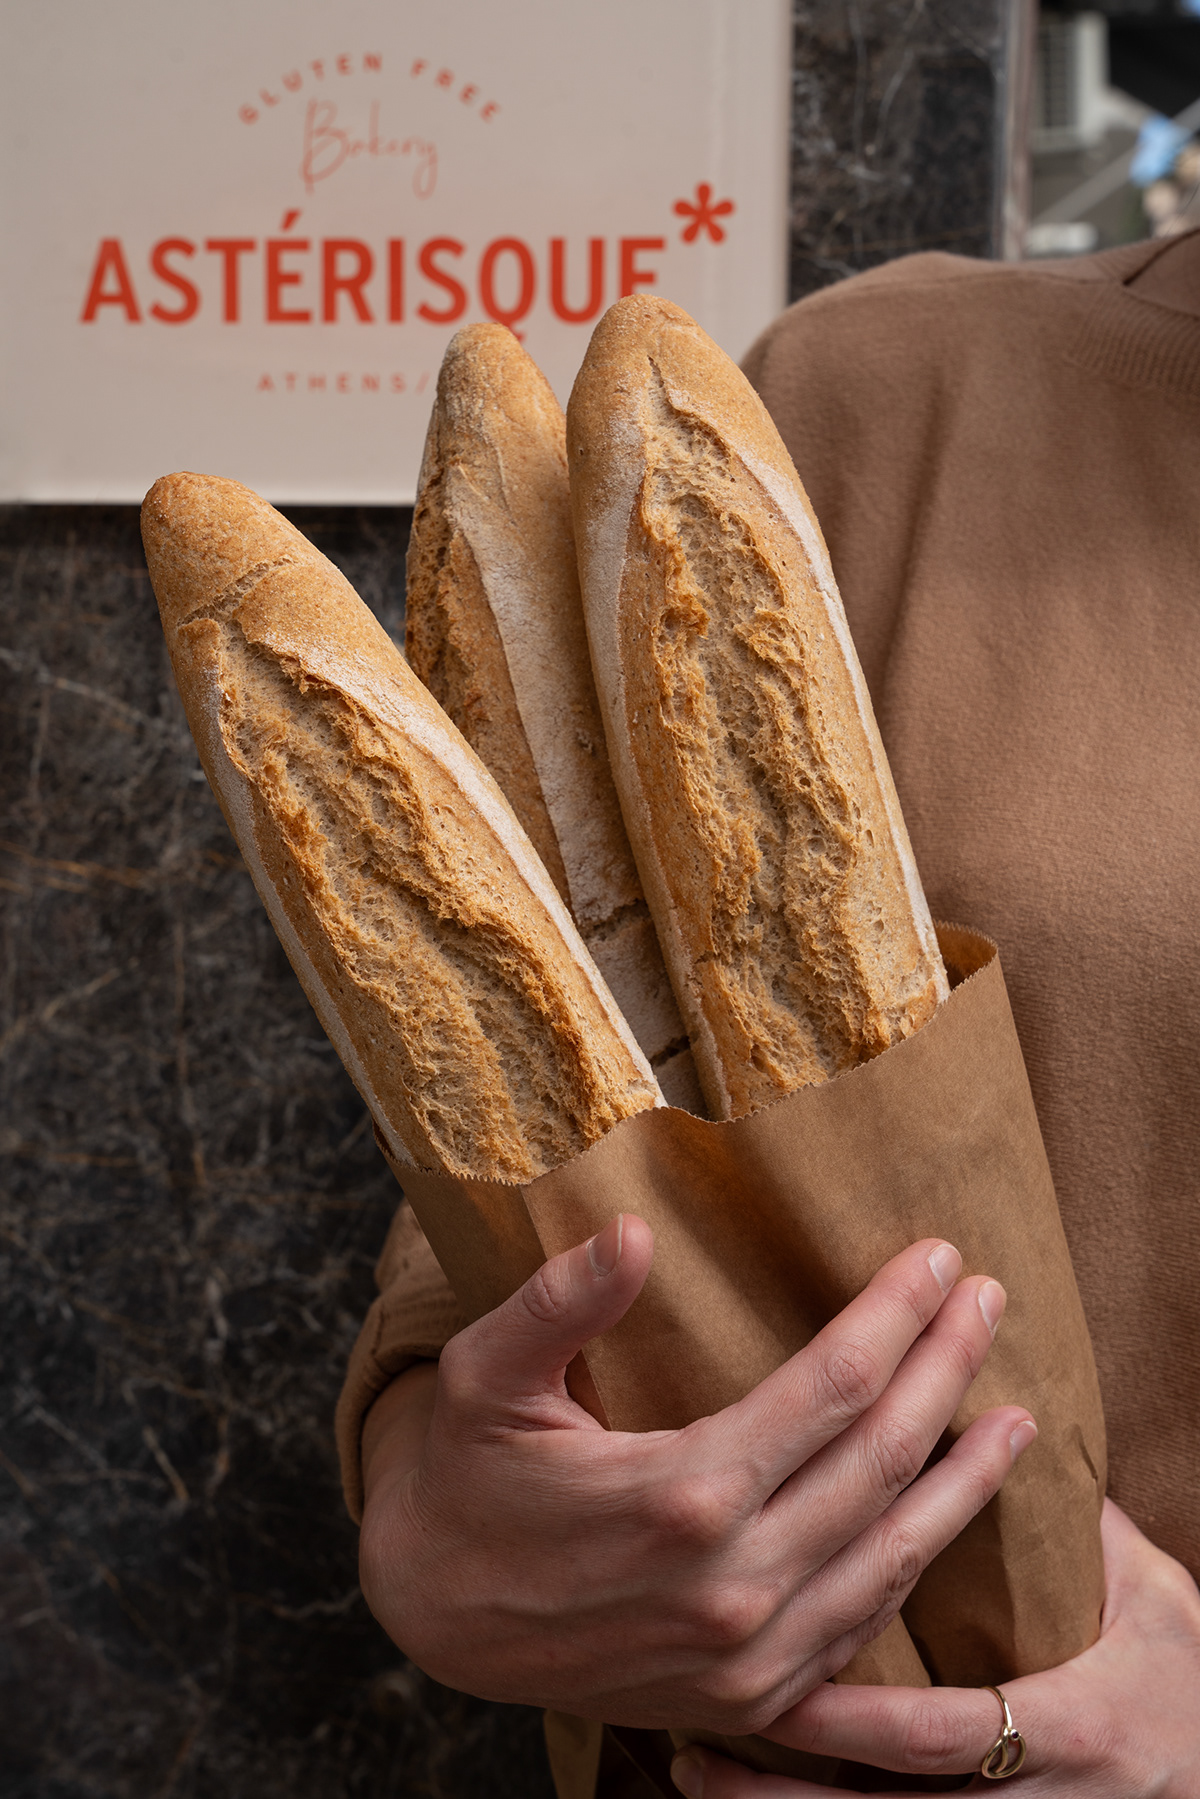 bakery Photography  photoshoot Product Photography food photography Advertising  photos bakeryphotography food photoshoot